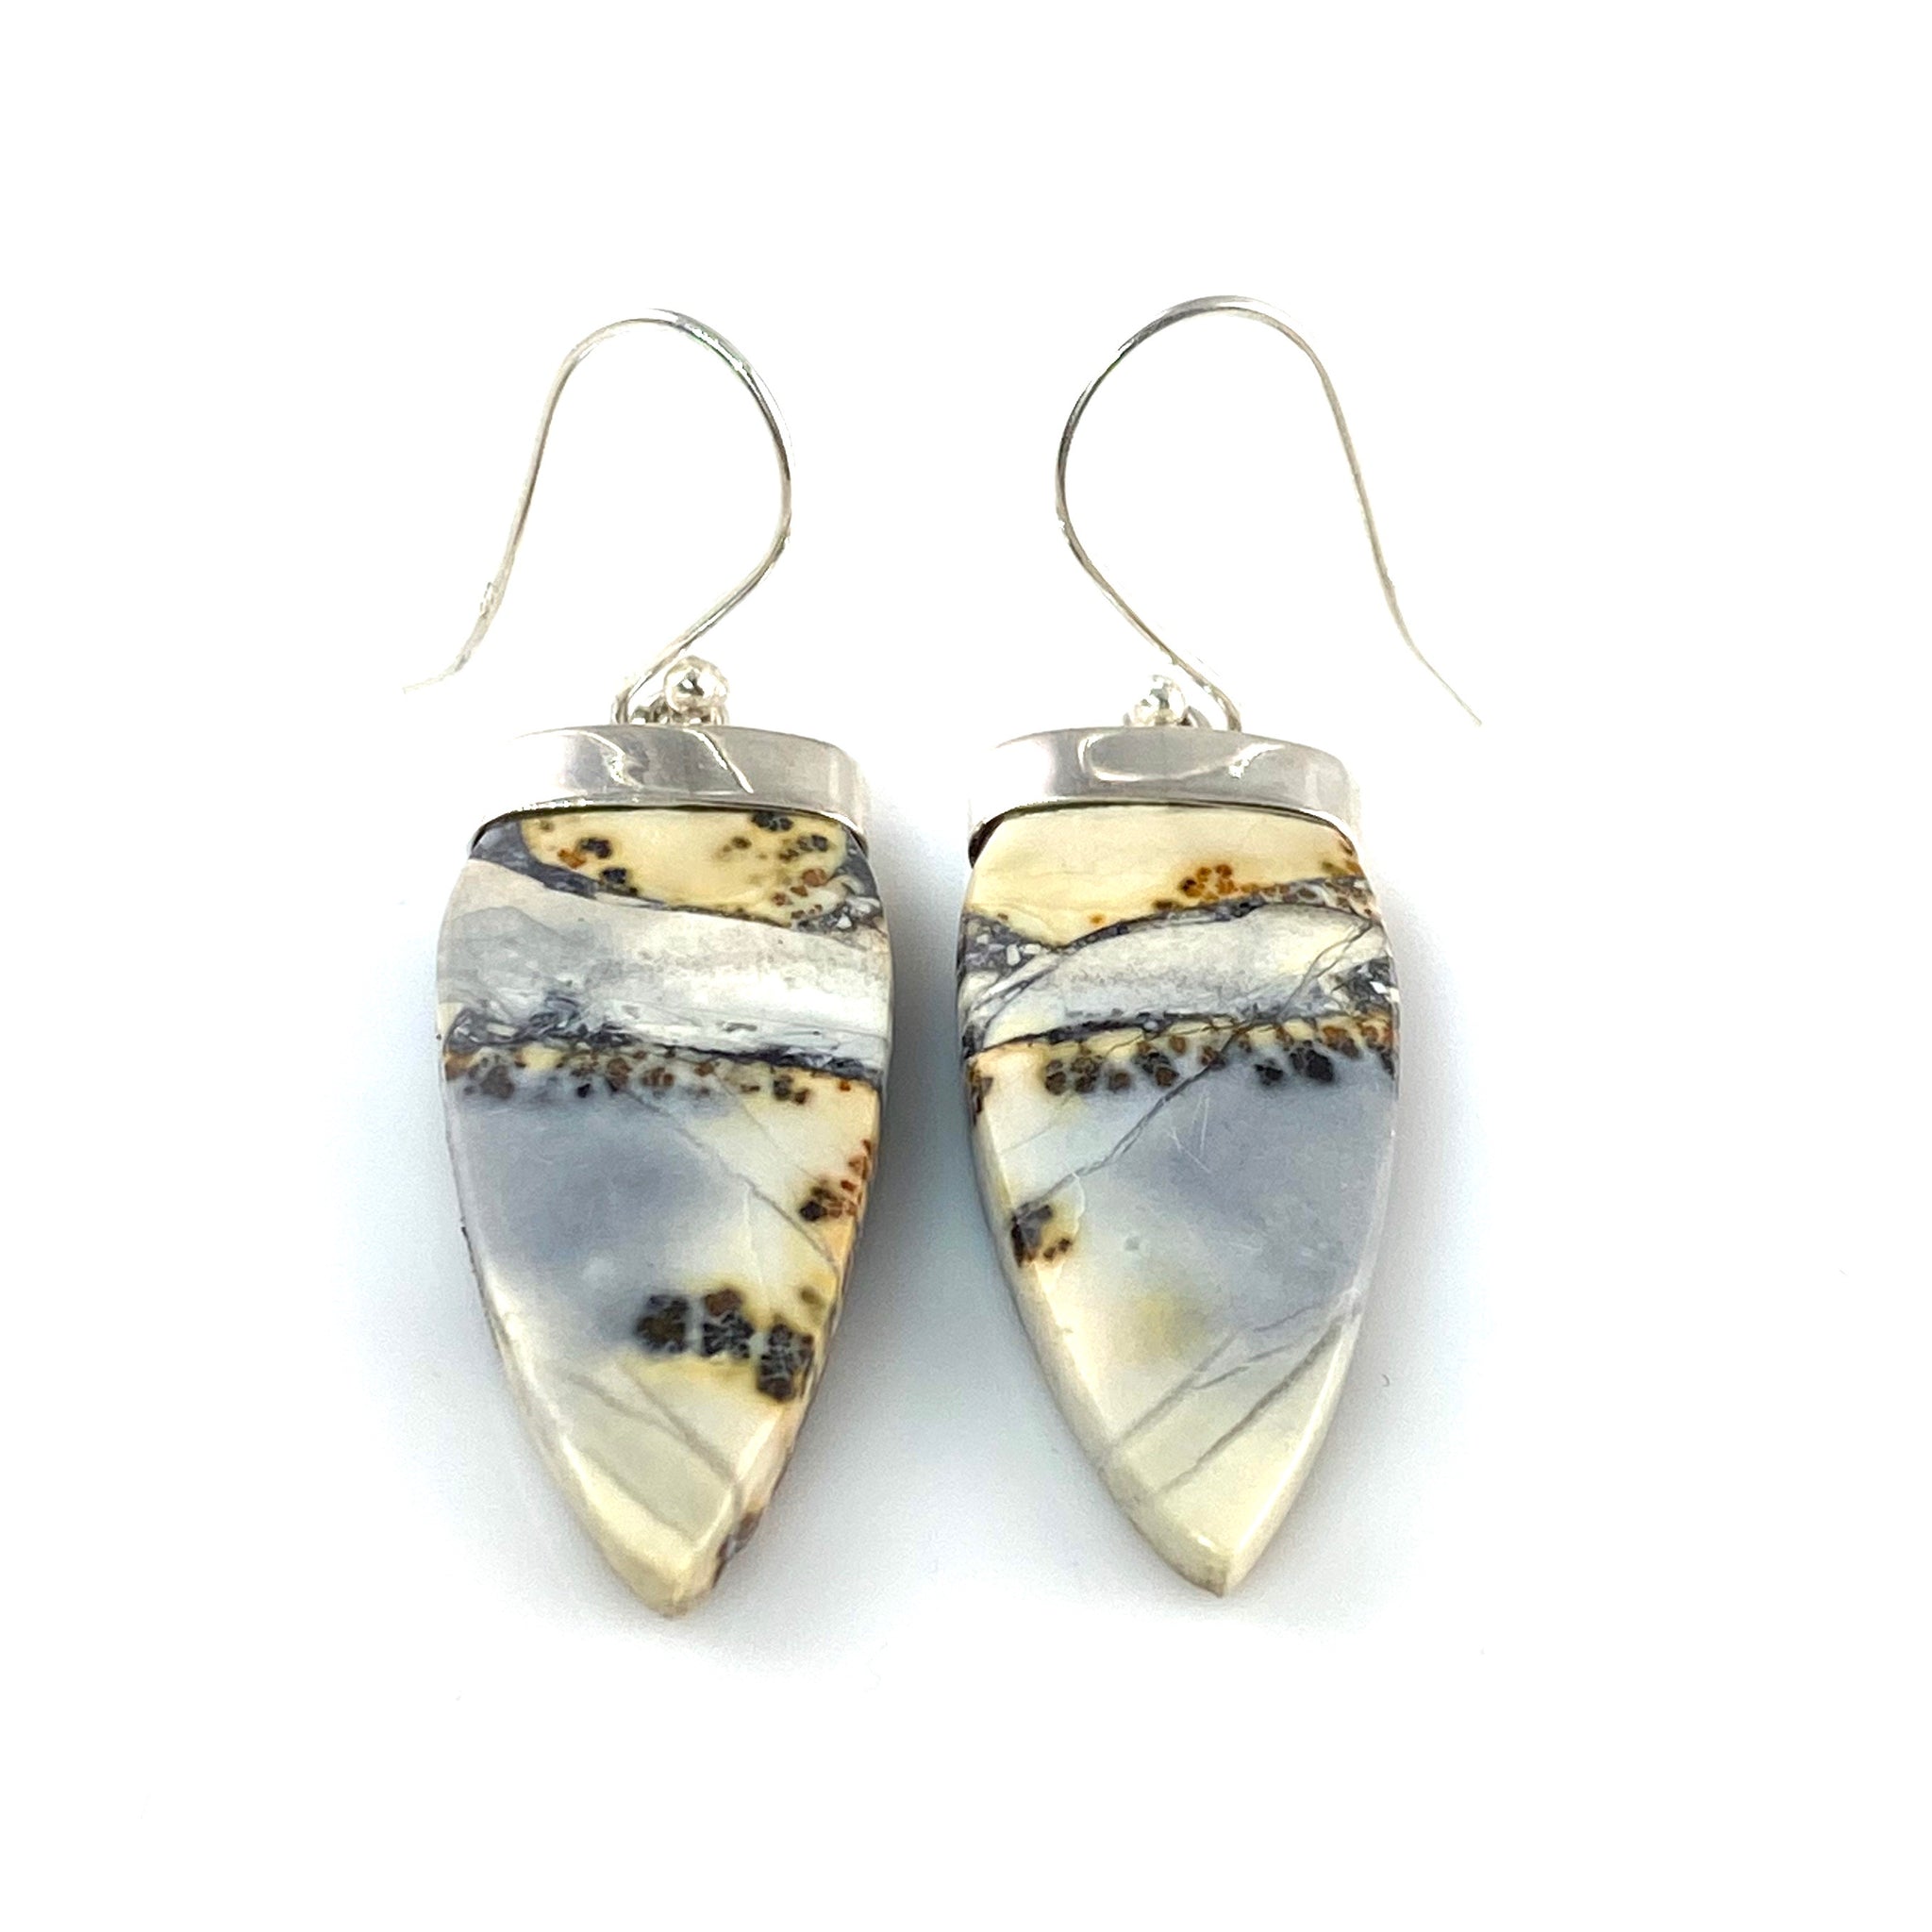 Maligano Jasper Sterling Silver Point Earrings - Keja Designs Jewelry